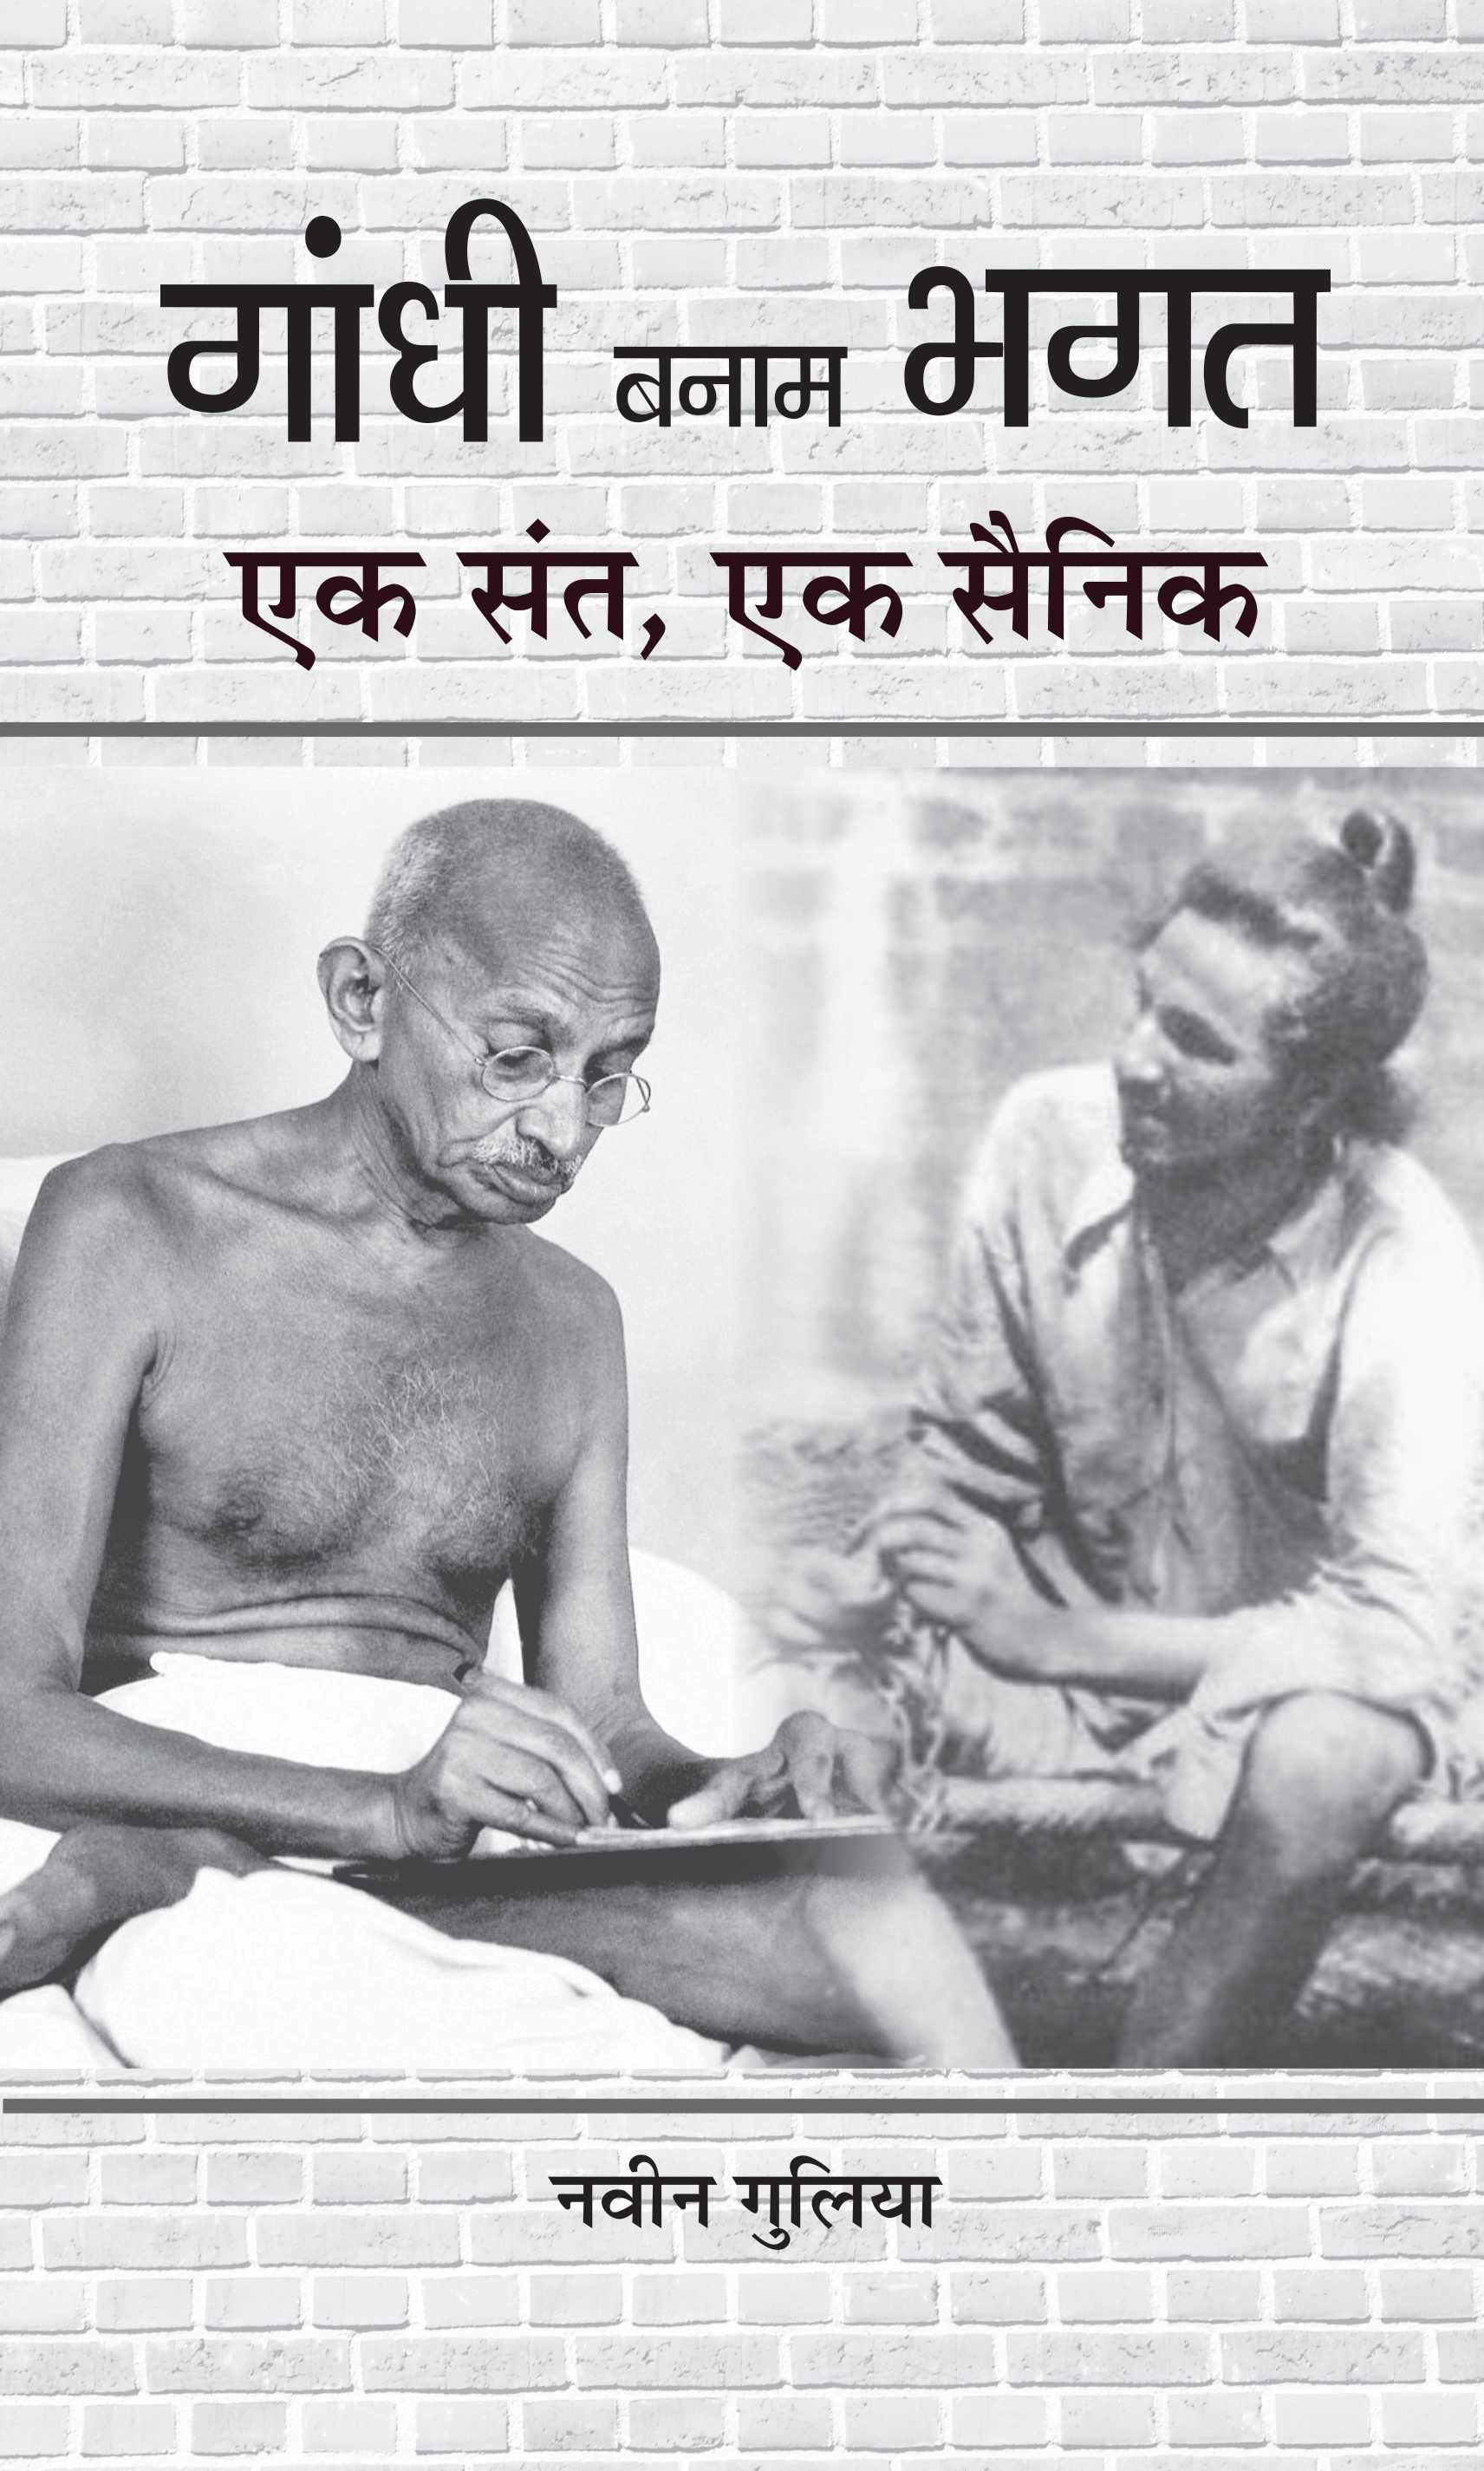 Gandhi Banam Bhagat : Ek Sant, Ek Sainik